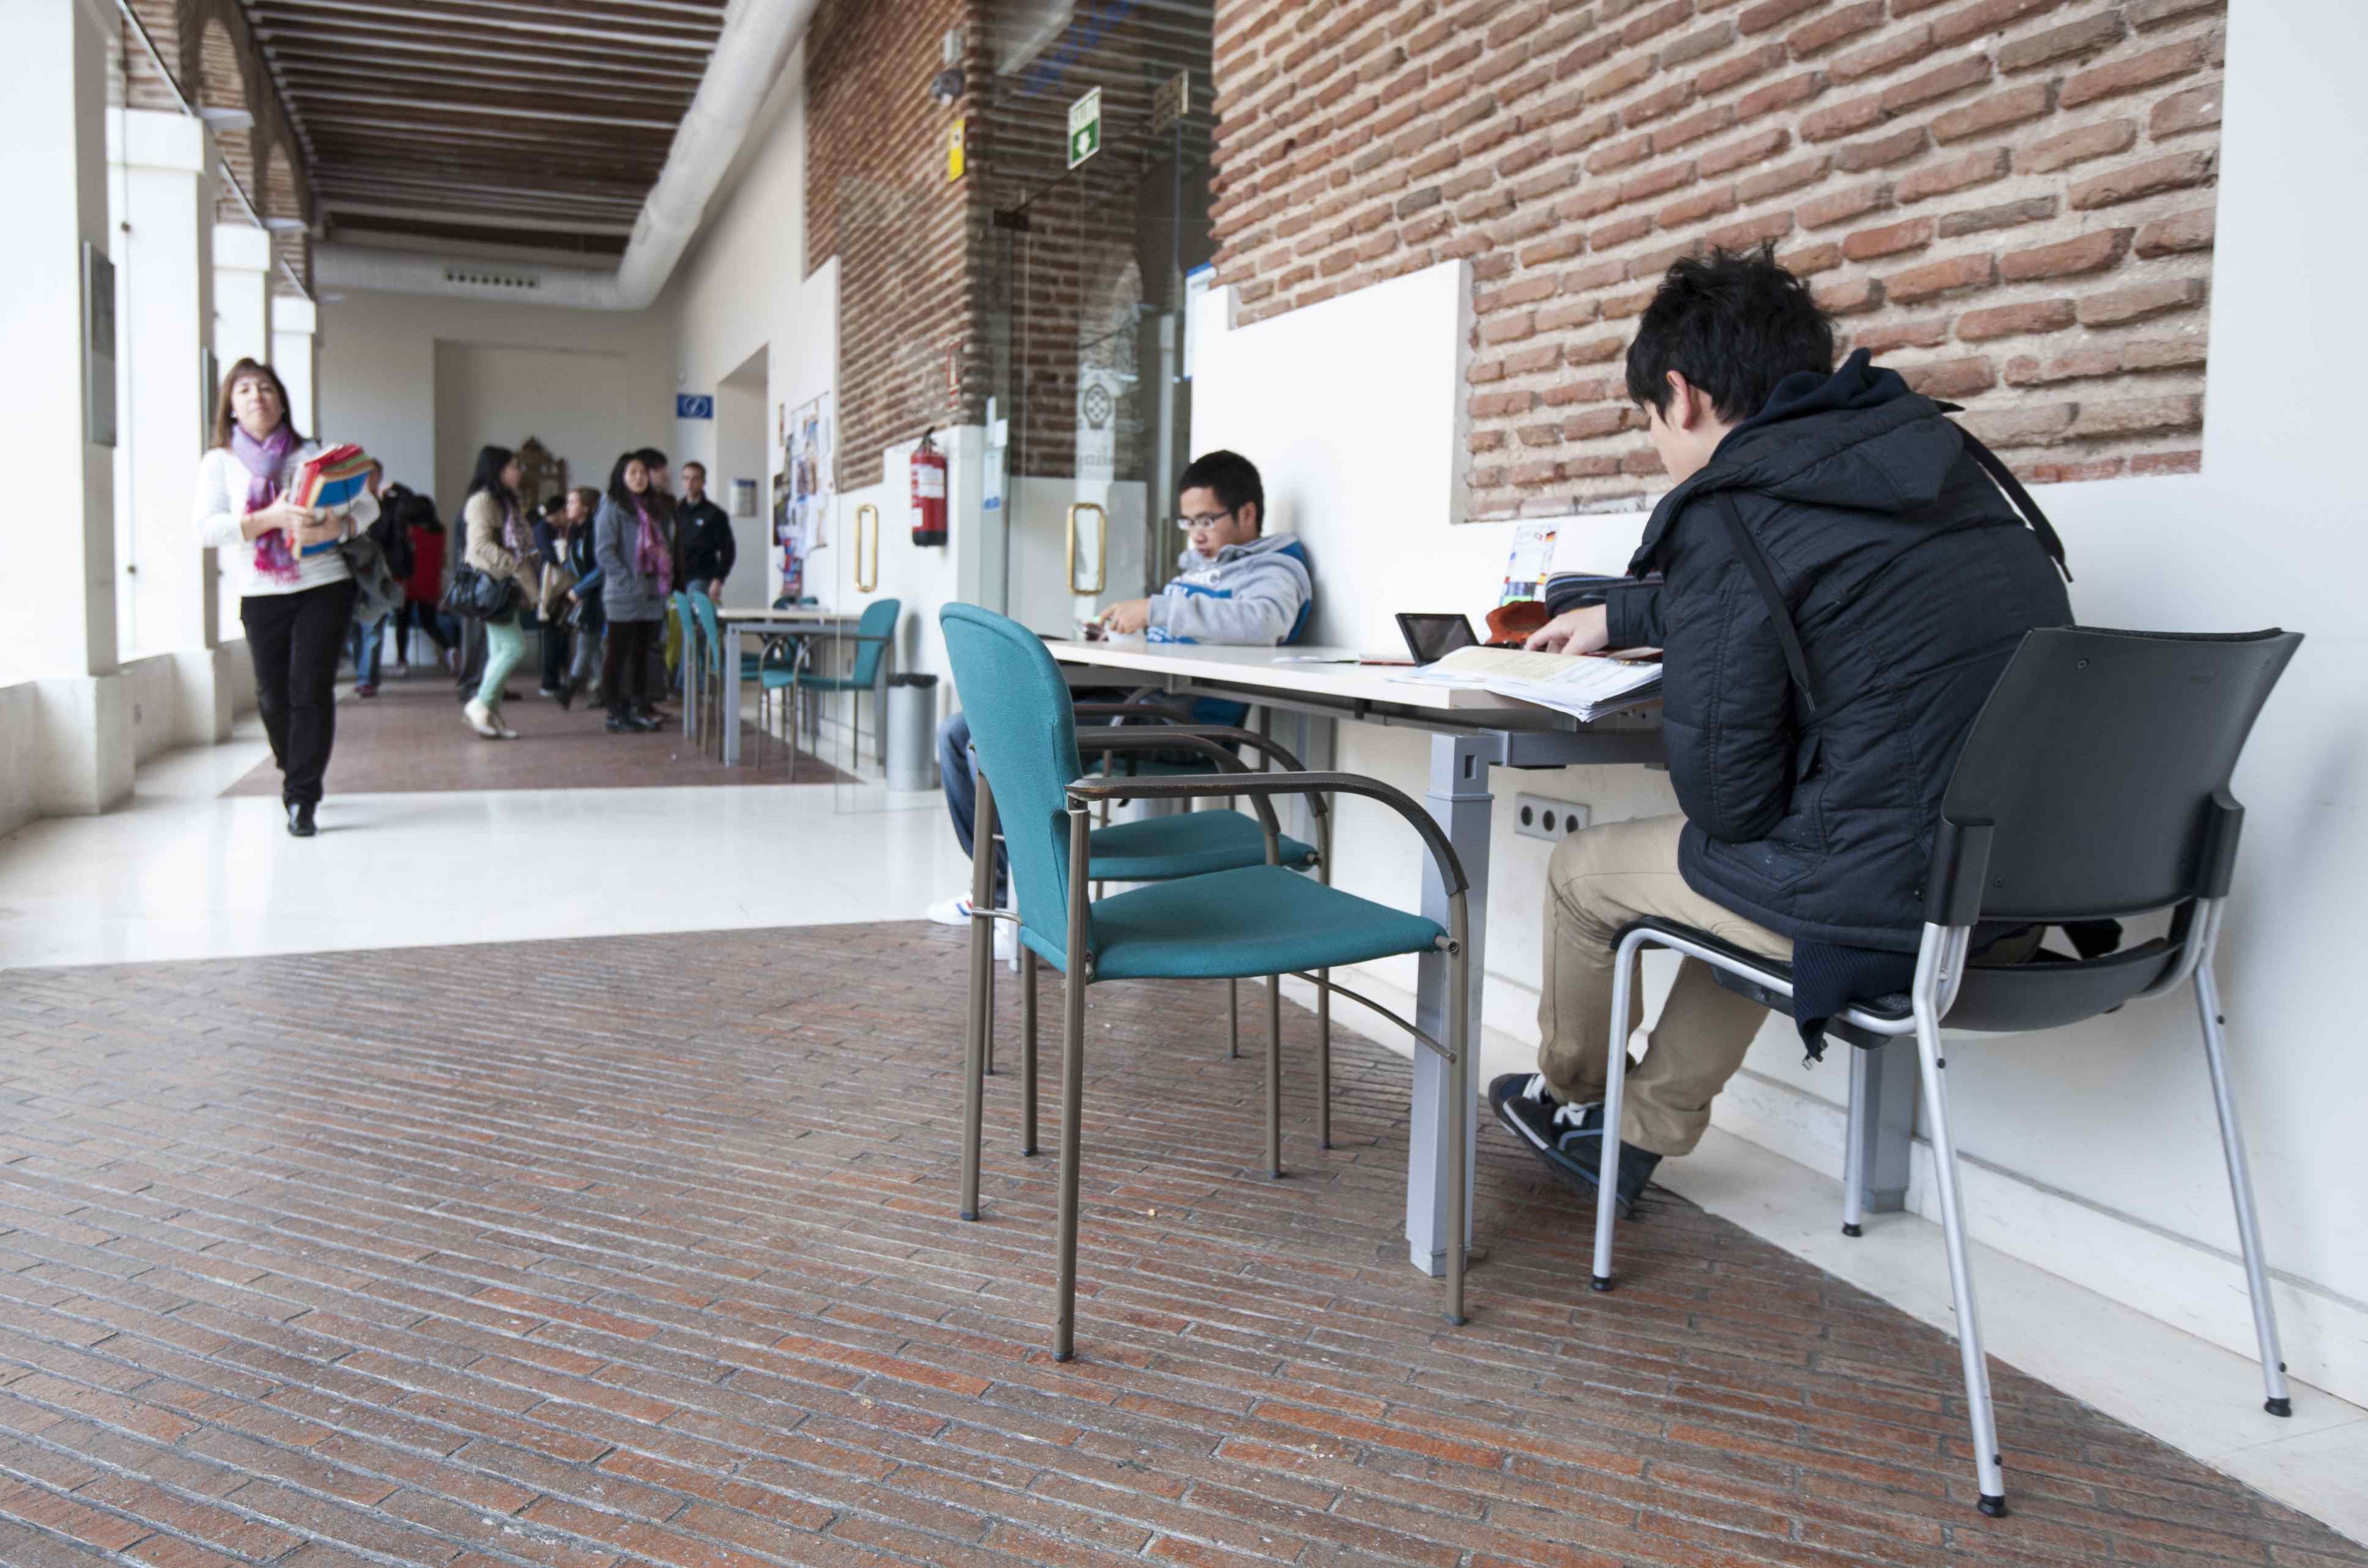 Alumnos Alcalingua Universidad de Alcalá